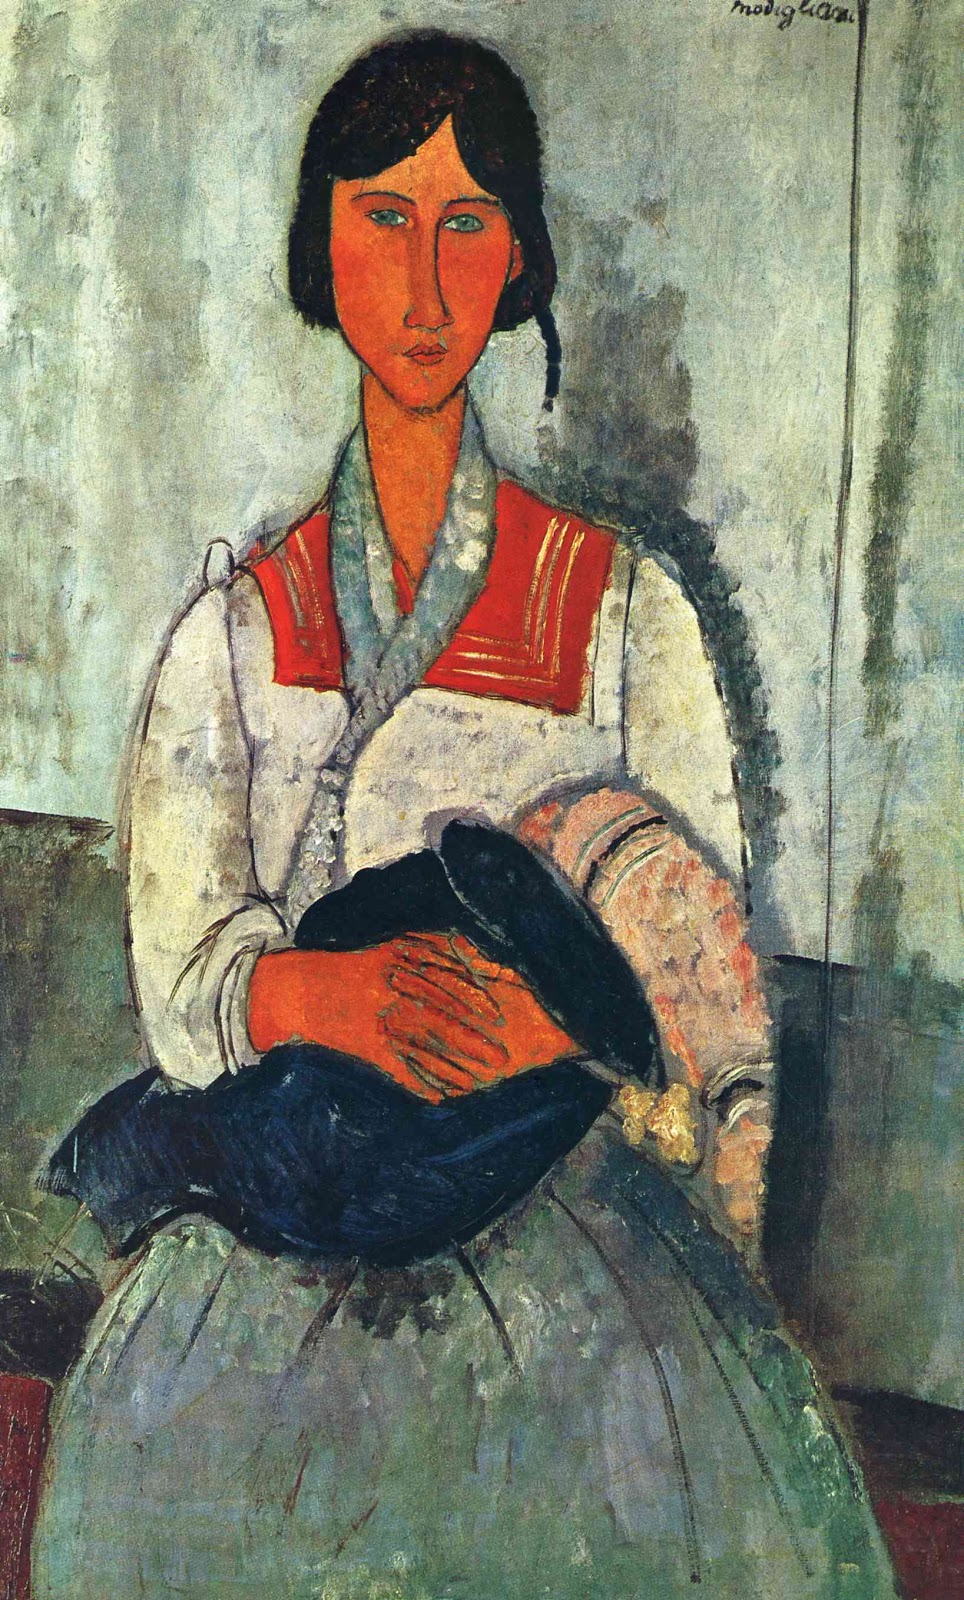 Amedeo+Modigliani-1884-1920 (91).jpg